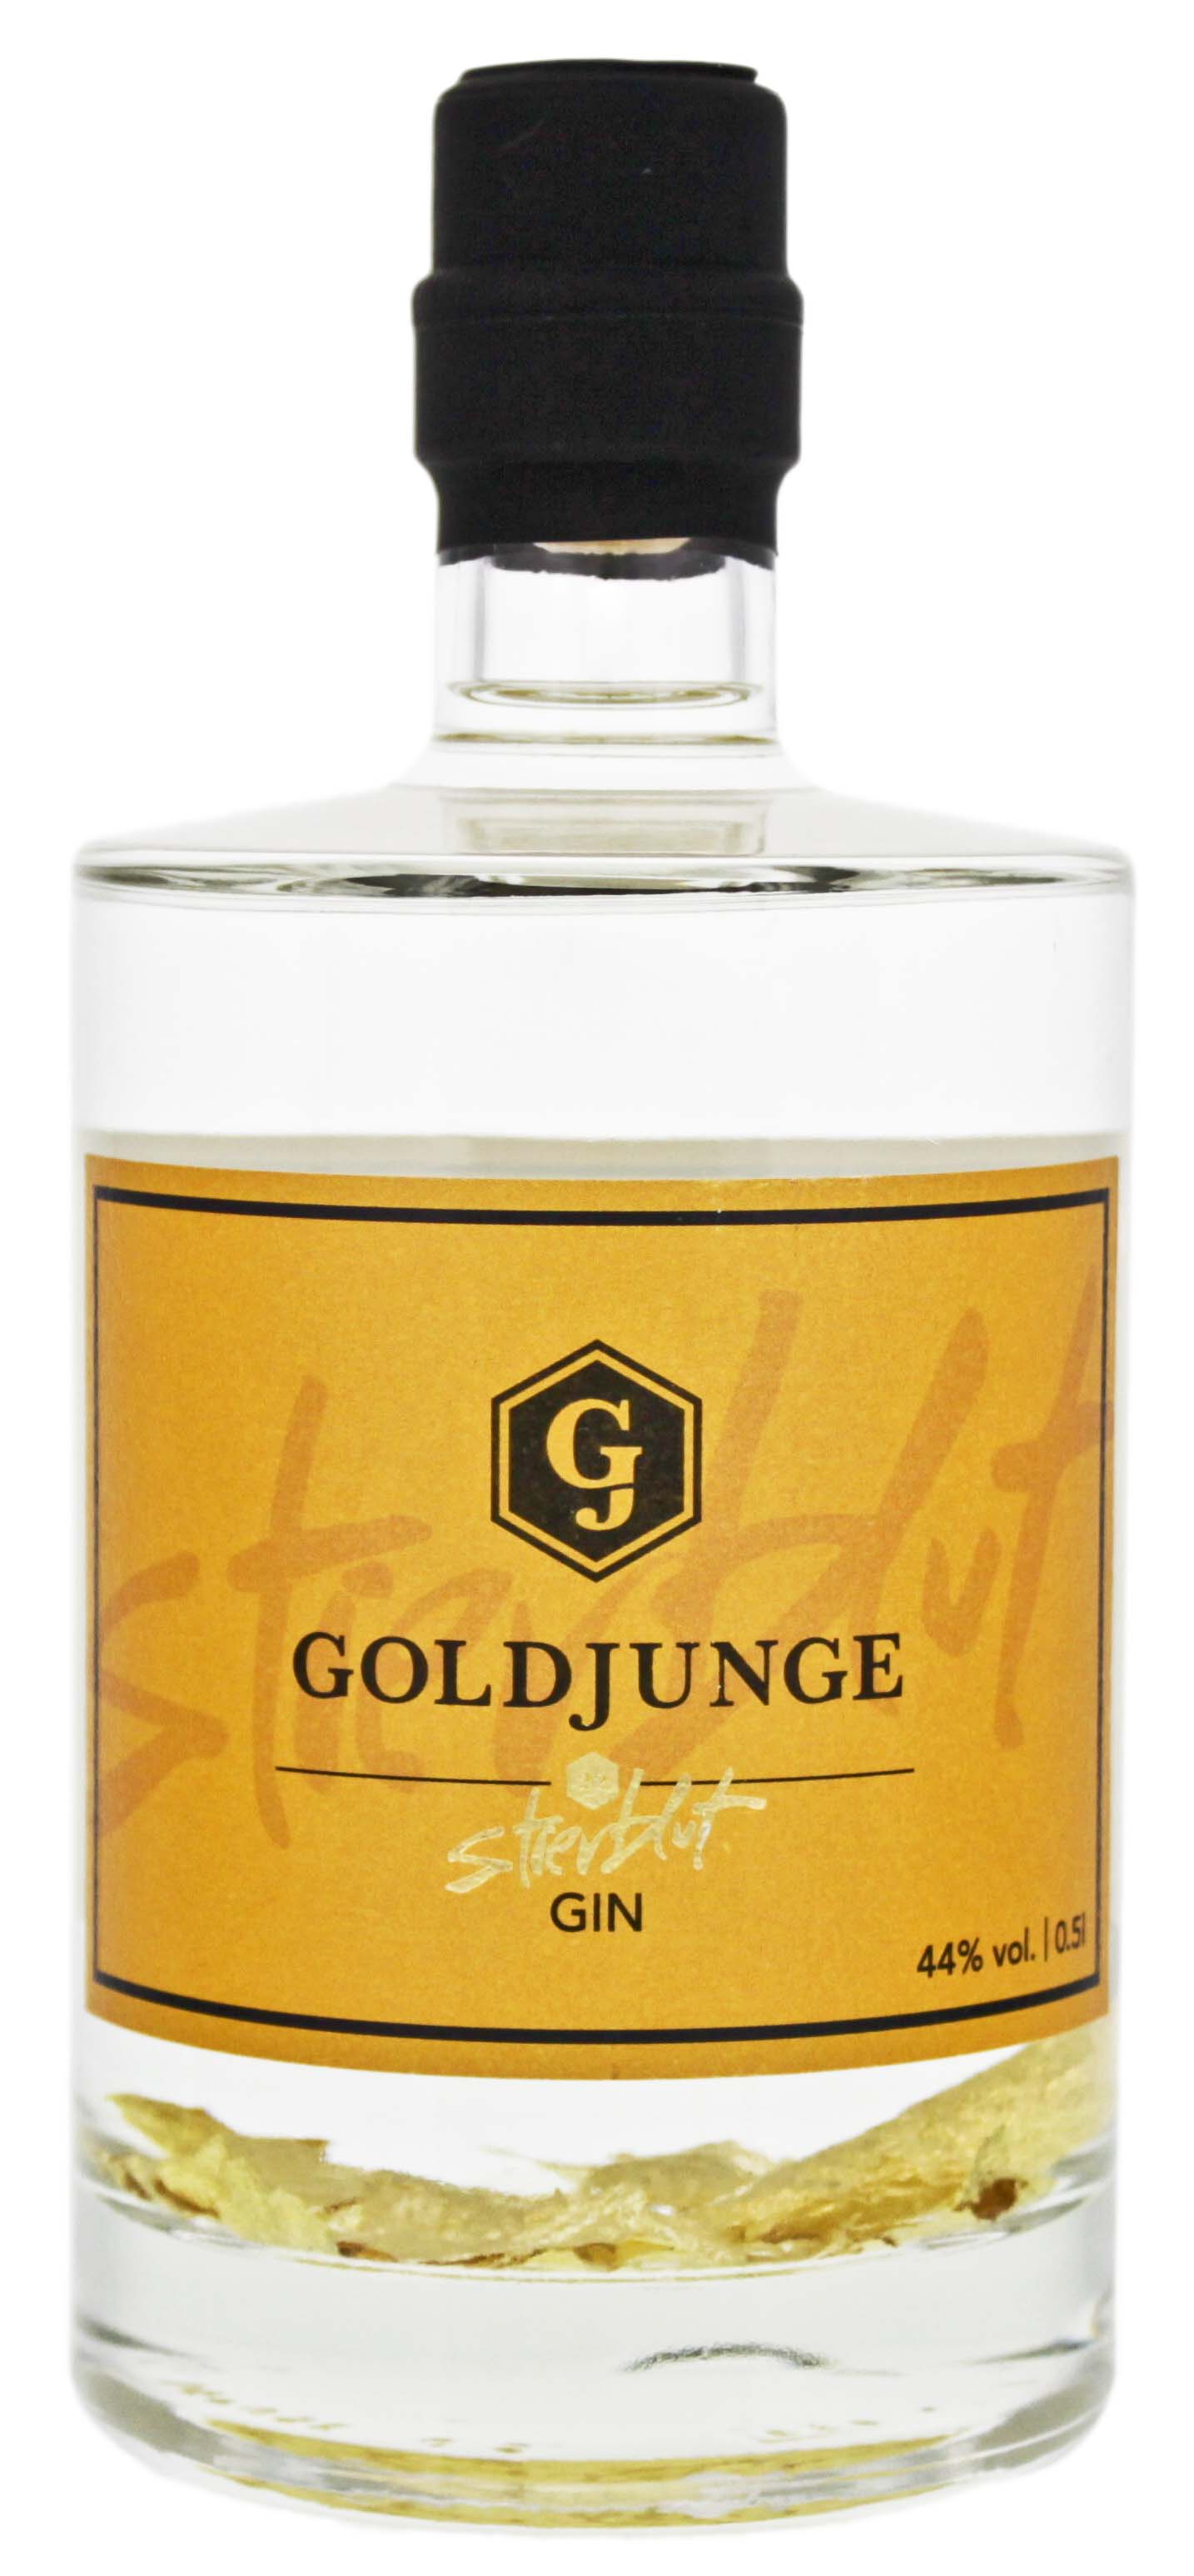 Goldjunge Gin